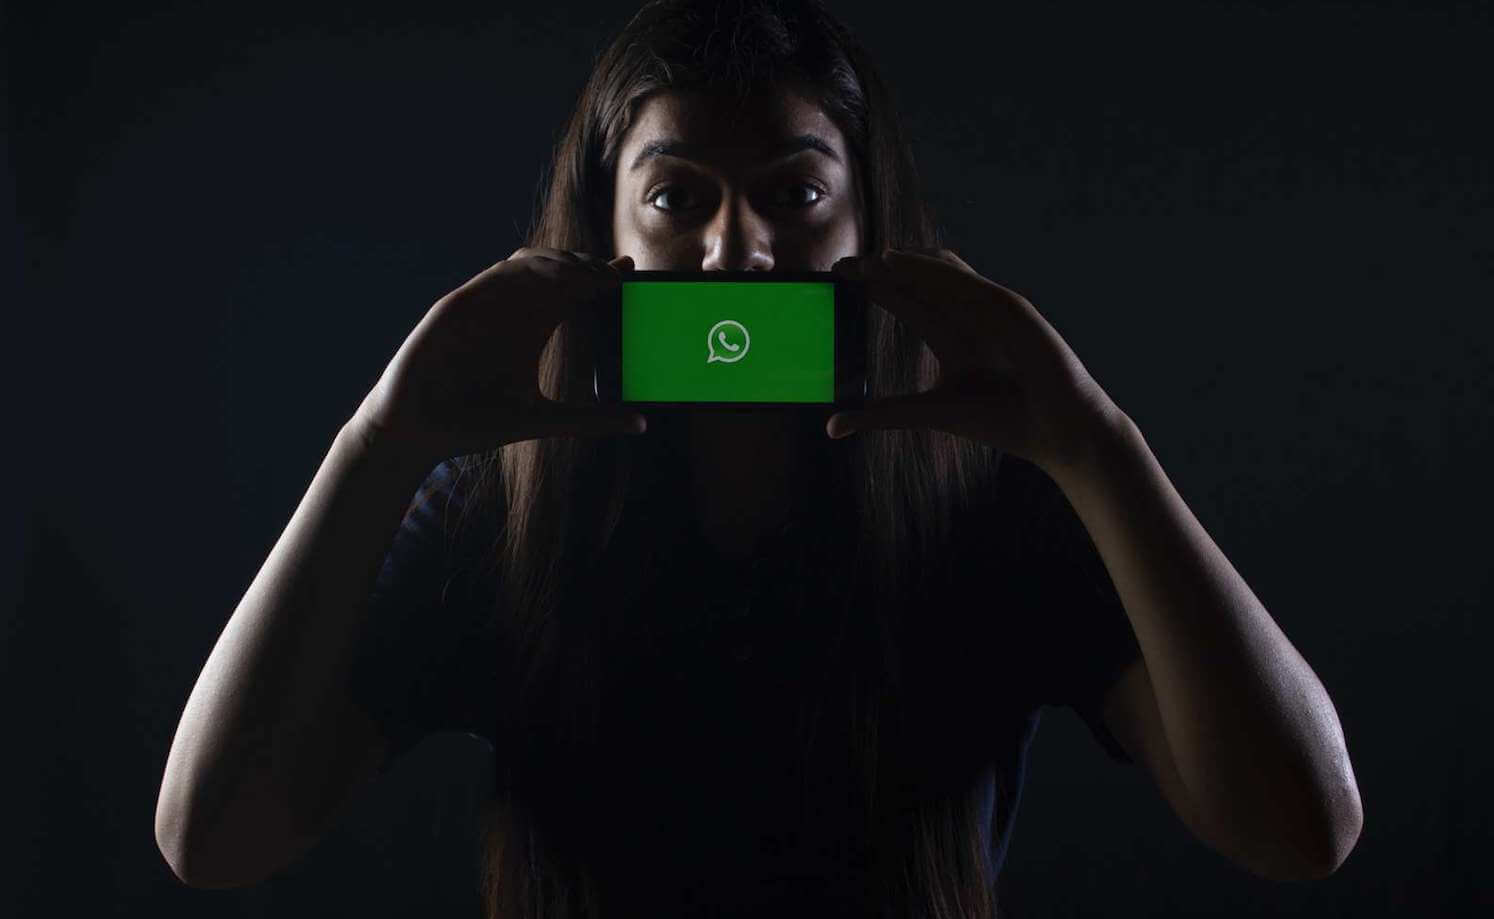 Роскомнадзор против WhatsApp. Заблокируют ли в России самый популярный мессенджер